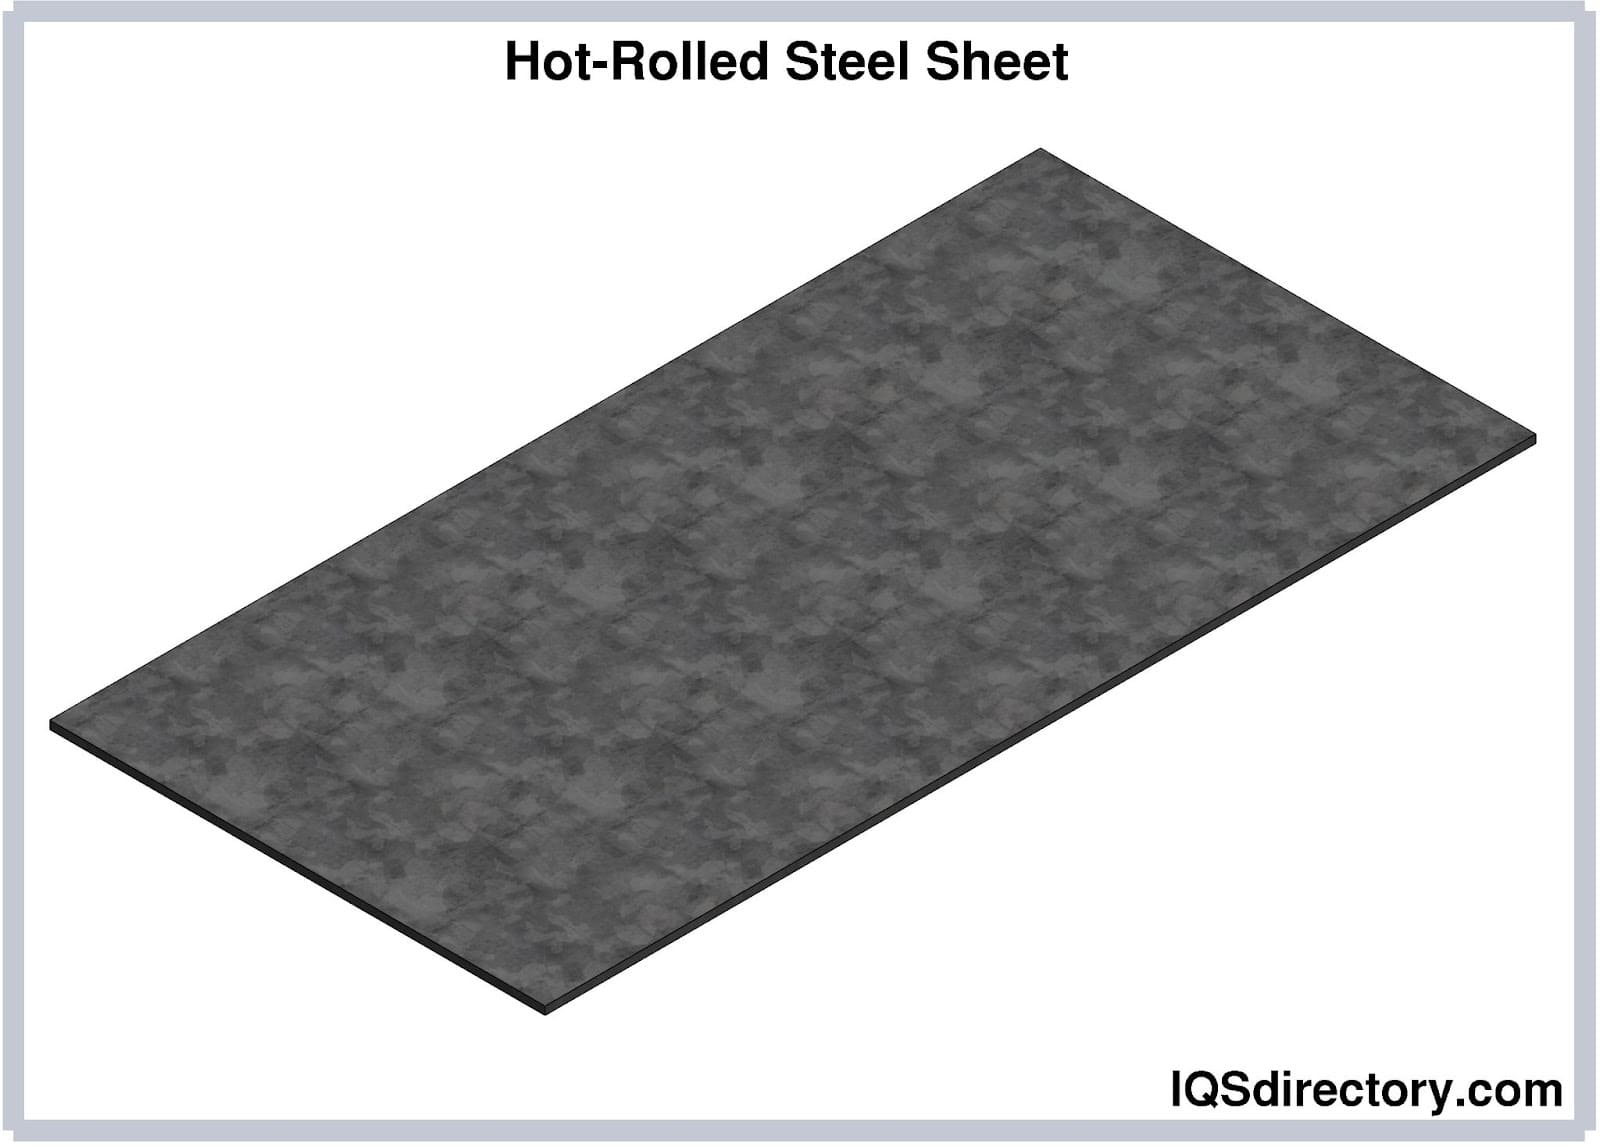 Hot-Rolled Steel Sheet